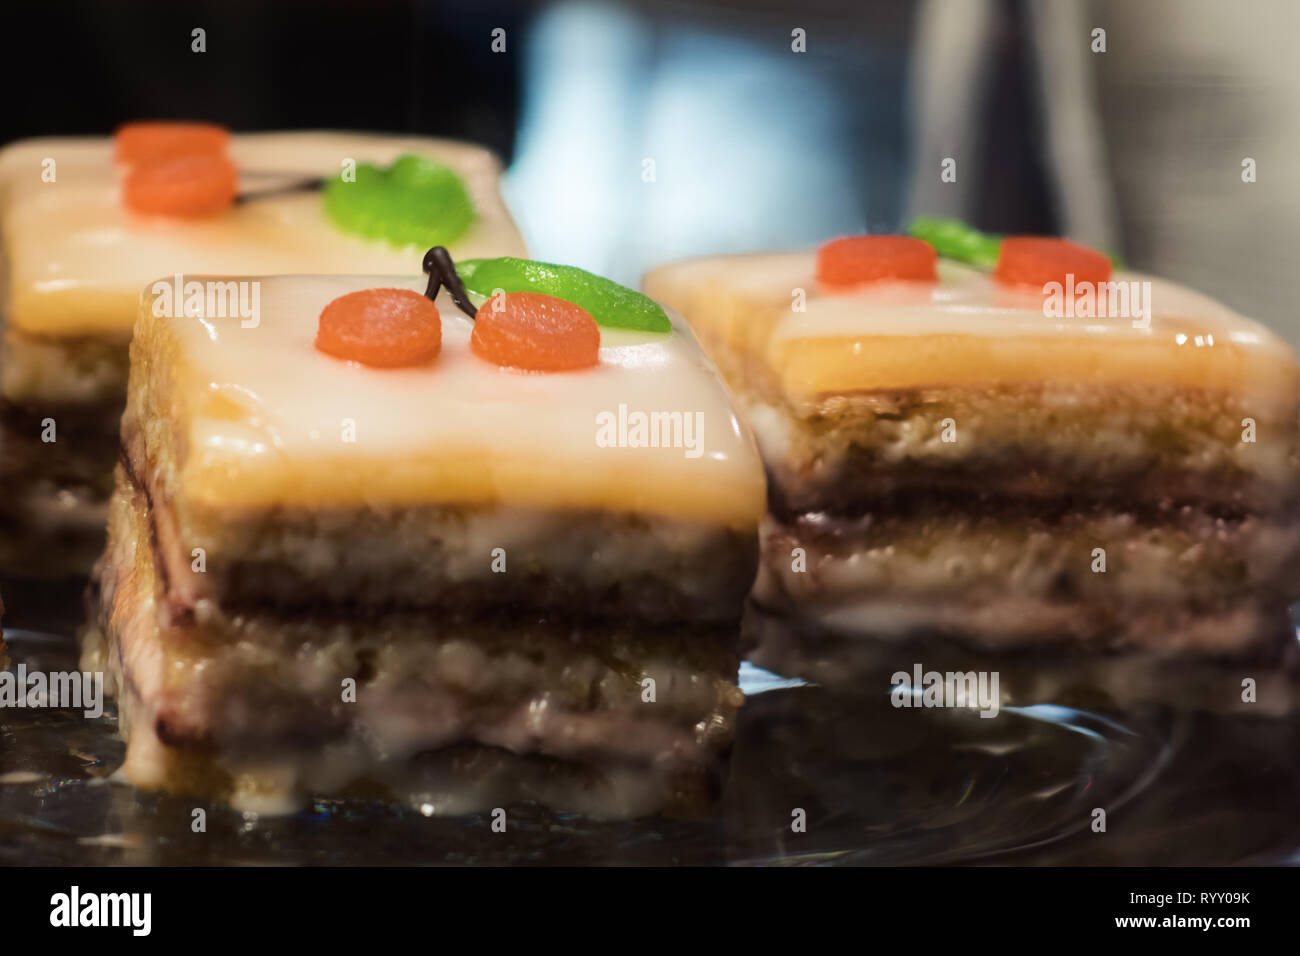 Süße Nachspeise mit Kirschen Dekoration - Kuchen, Kuchenstücke als Dessert Foto Stock